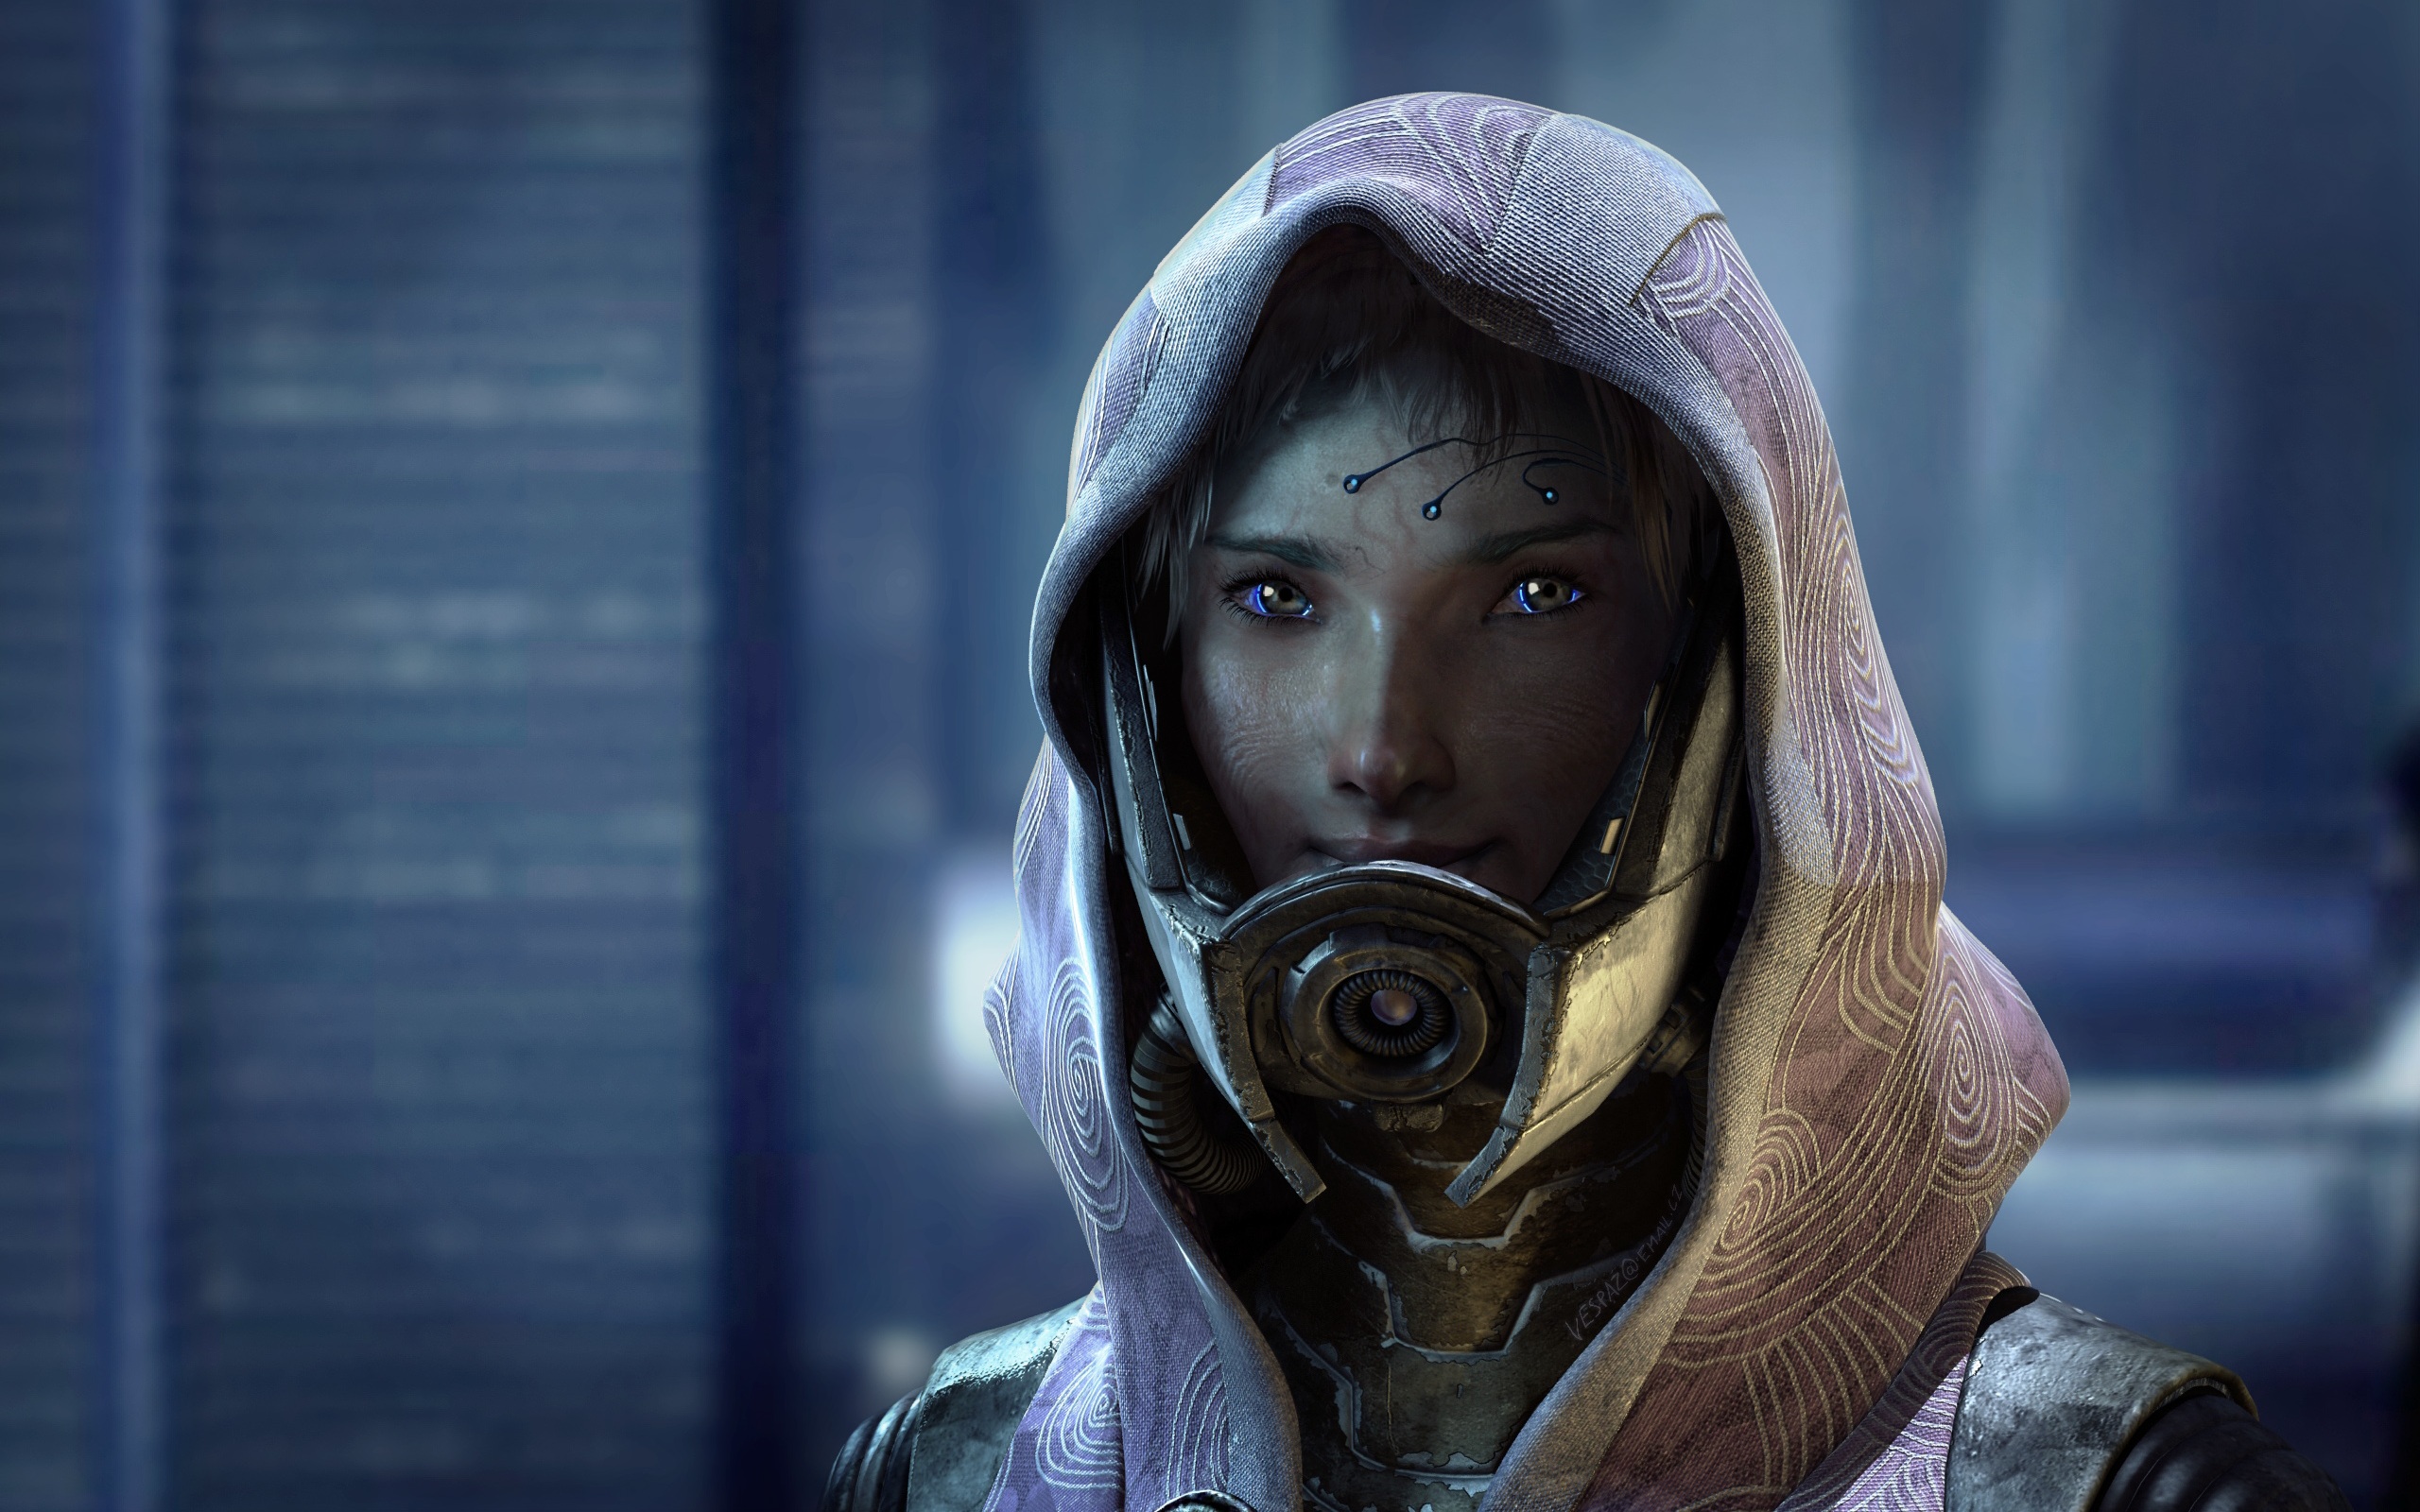 Tali'Zorah from Mass Effect